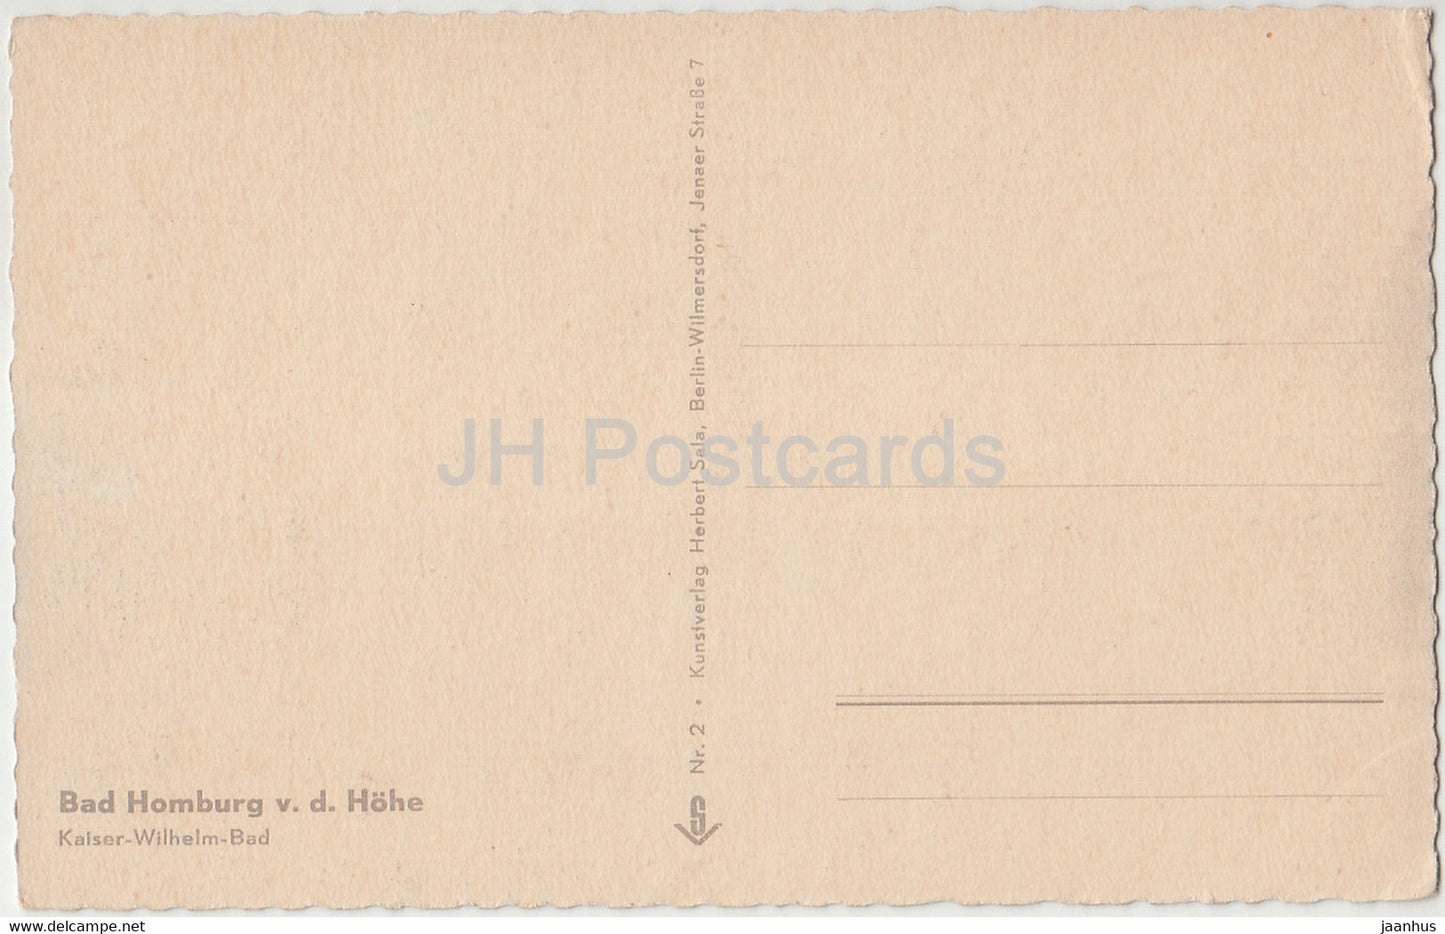 Bad Homburg v d Hohe - Kaiser Wilhelm Bad - old postcard - Germany - unused